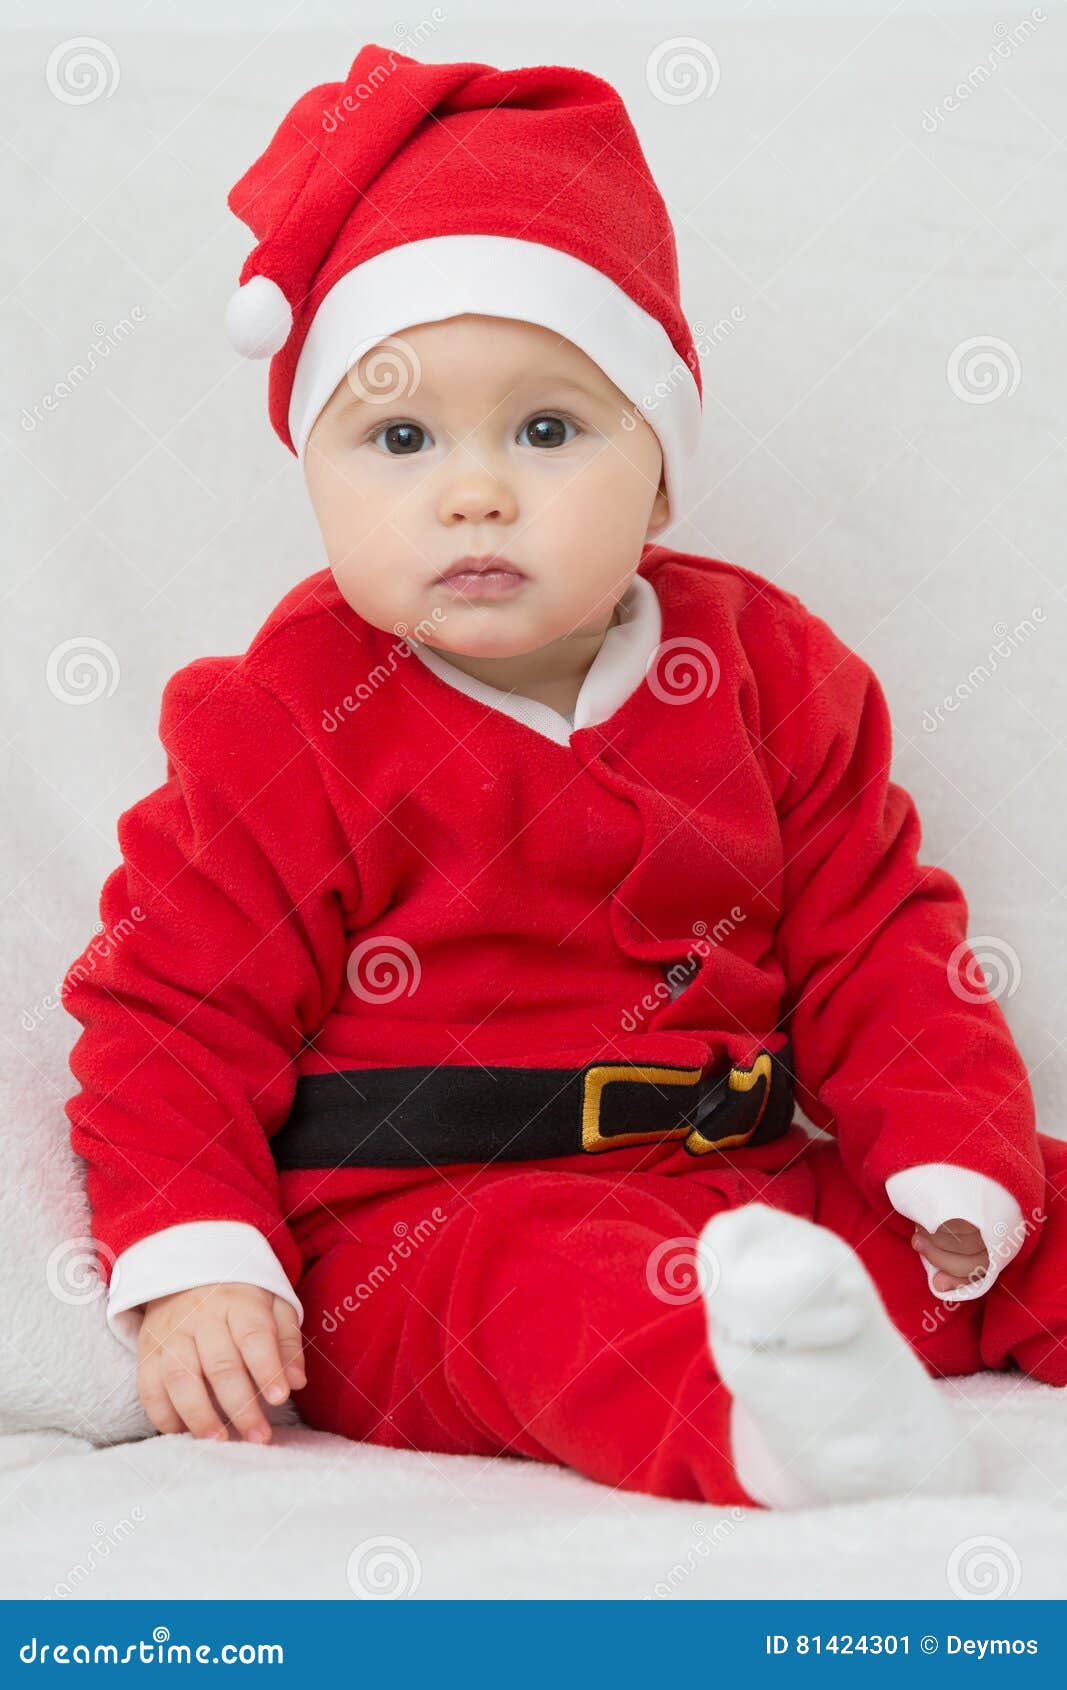 Mojado Radar Intacto Siete Meses Del Bebé En El Vestido De Santa Claus Imagen de archivo -  Imagen de manos, adorable: 81424301